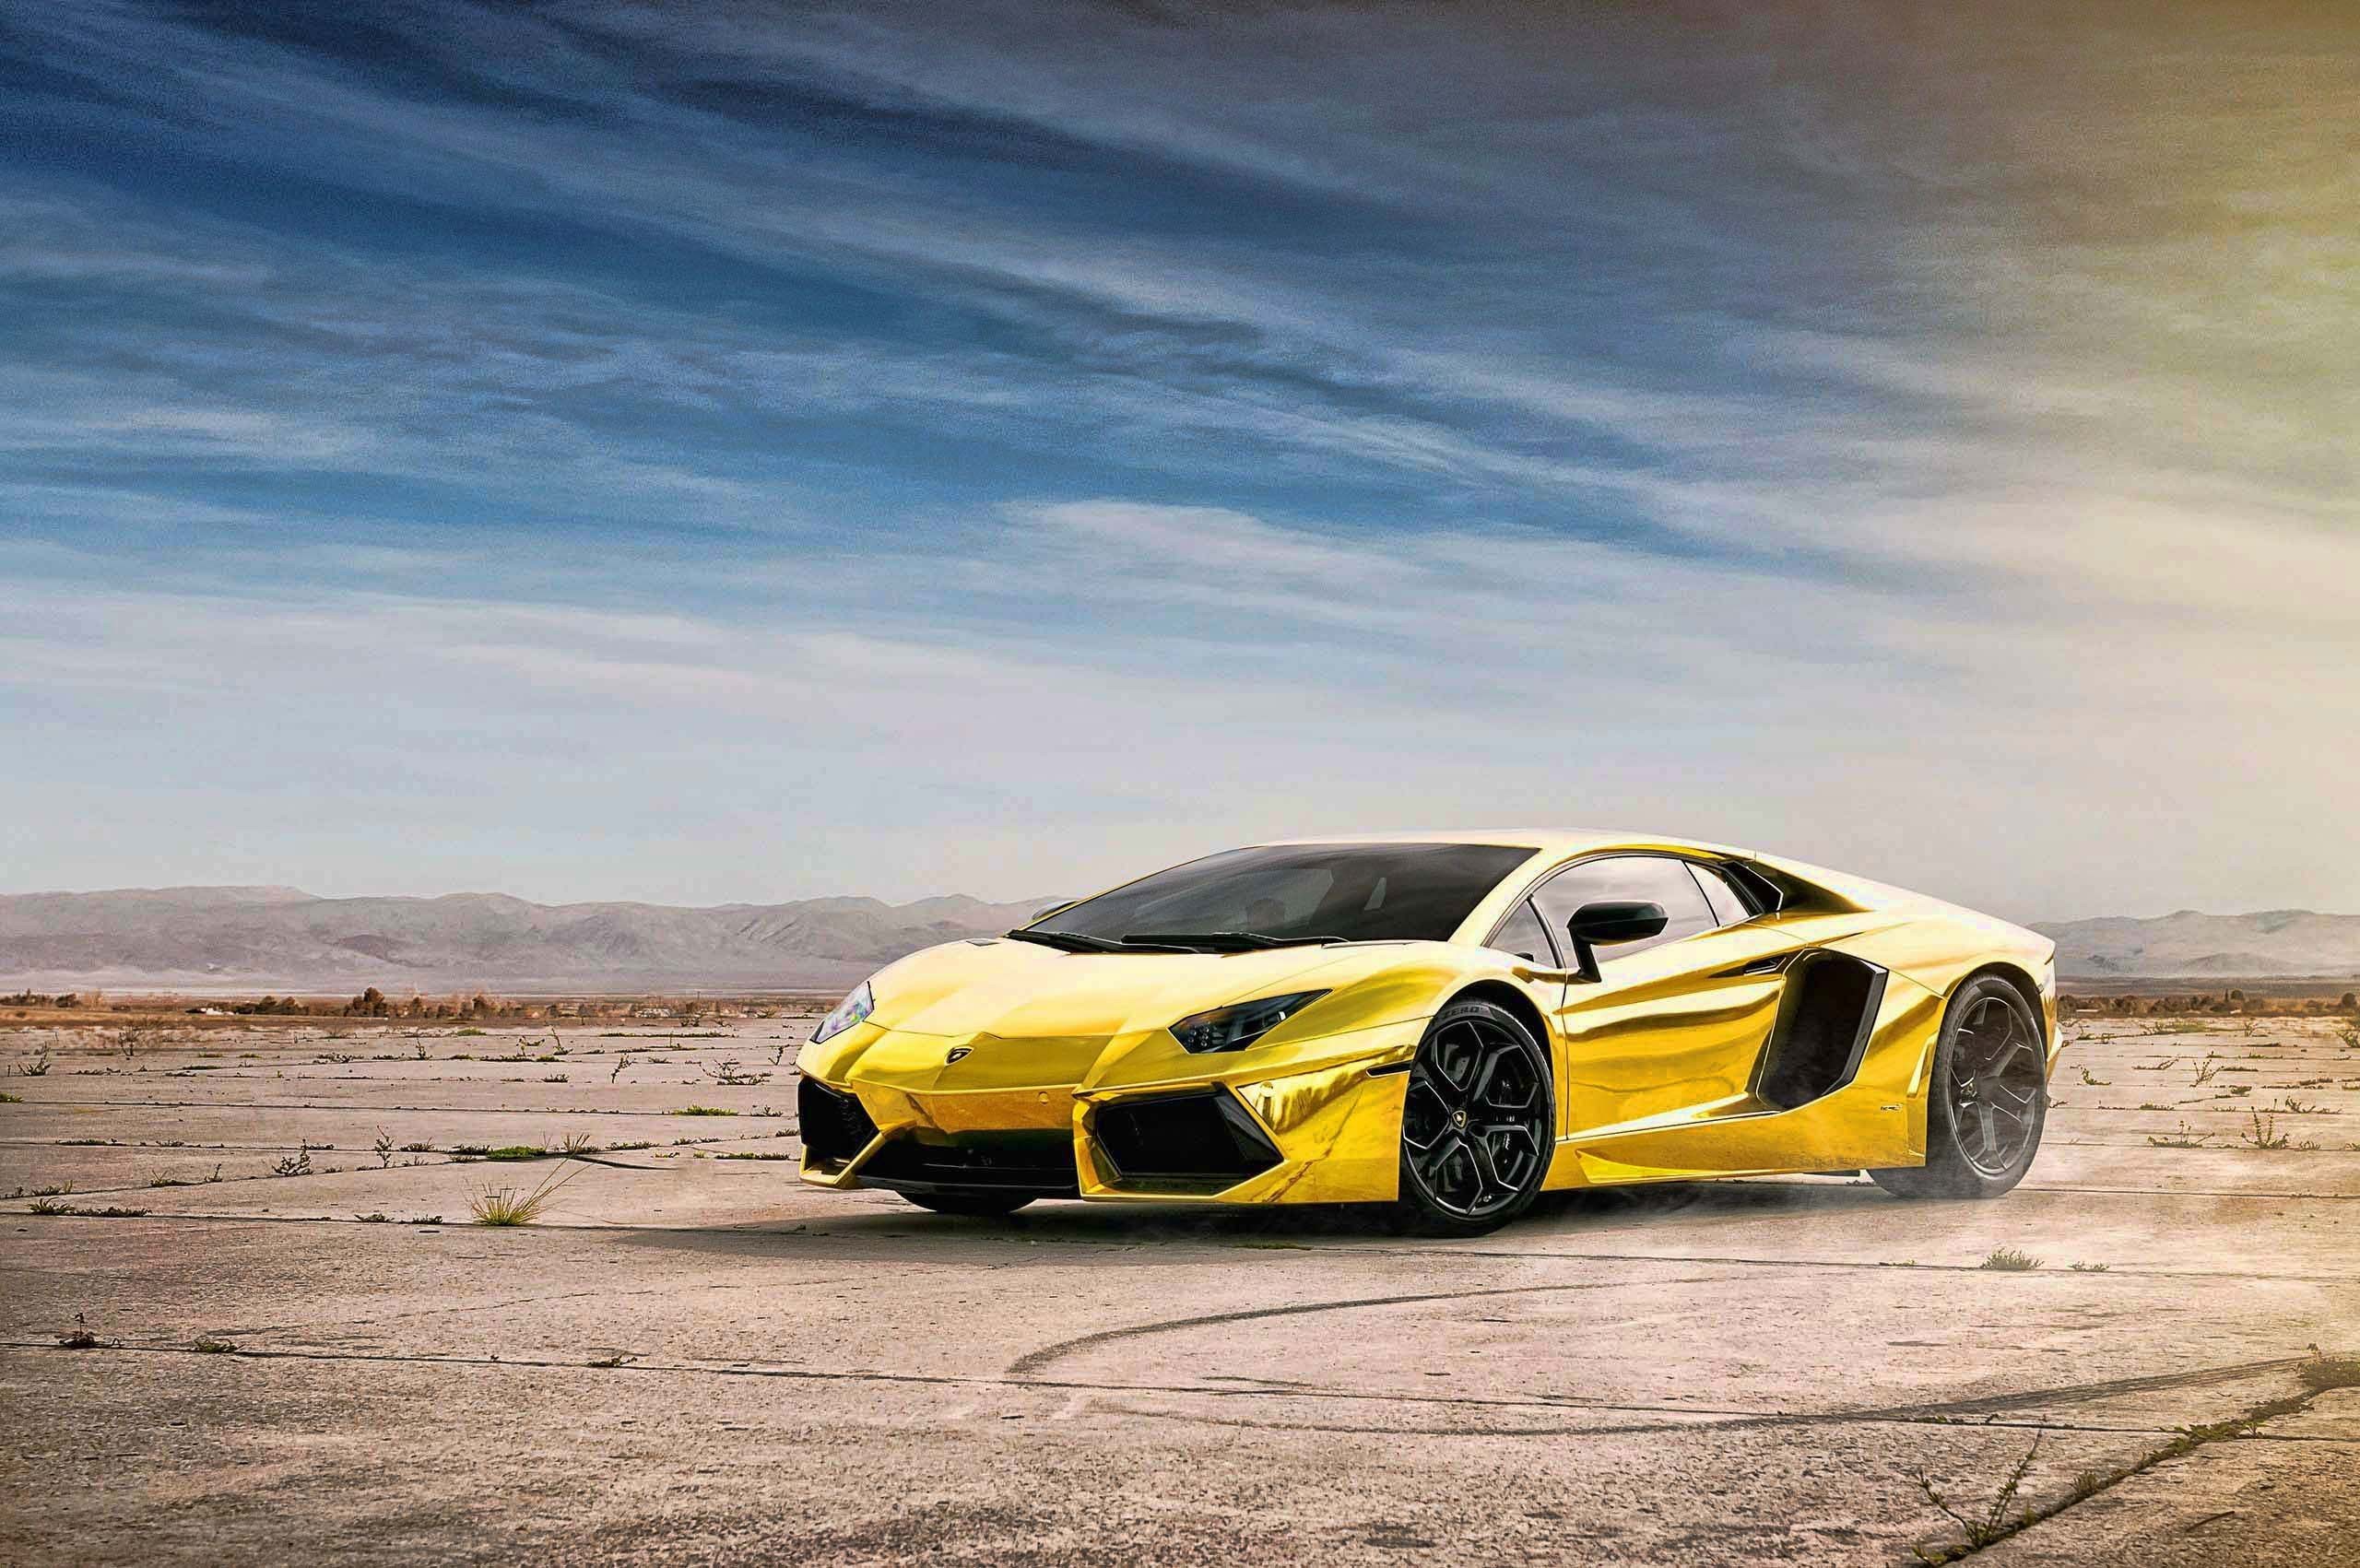 General 2560x1701 car Lamborghini Lamborghini Aventador yellow cars vehicle supercars italian cars Volkswagen Group